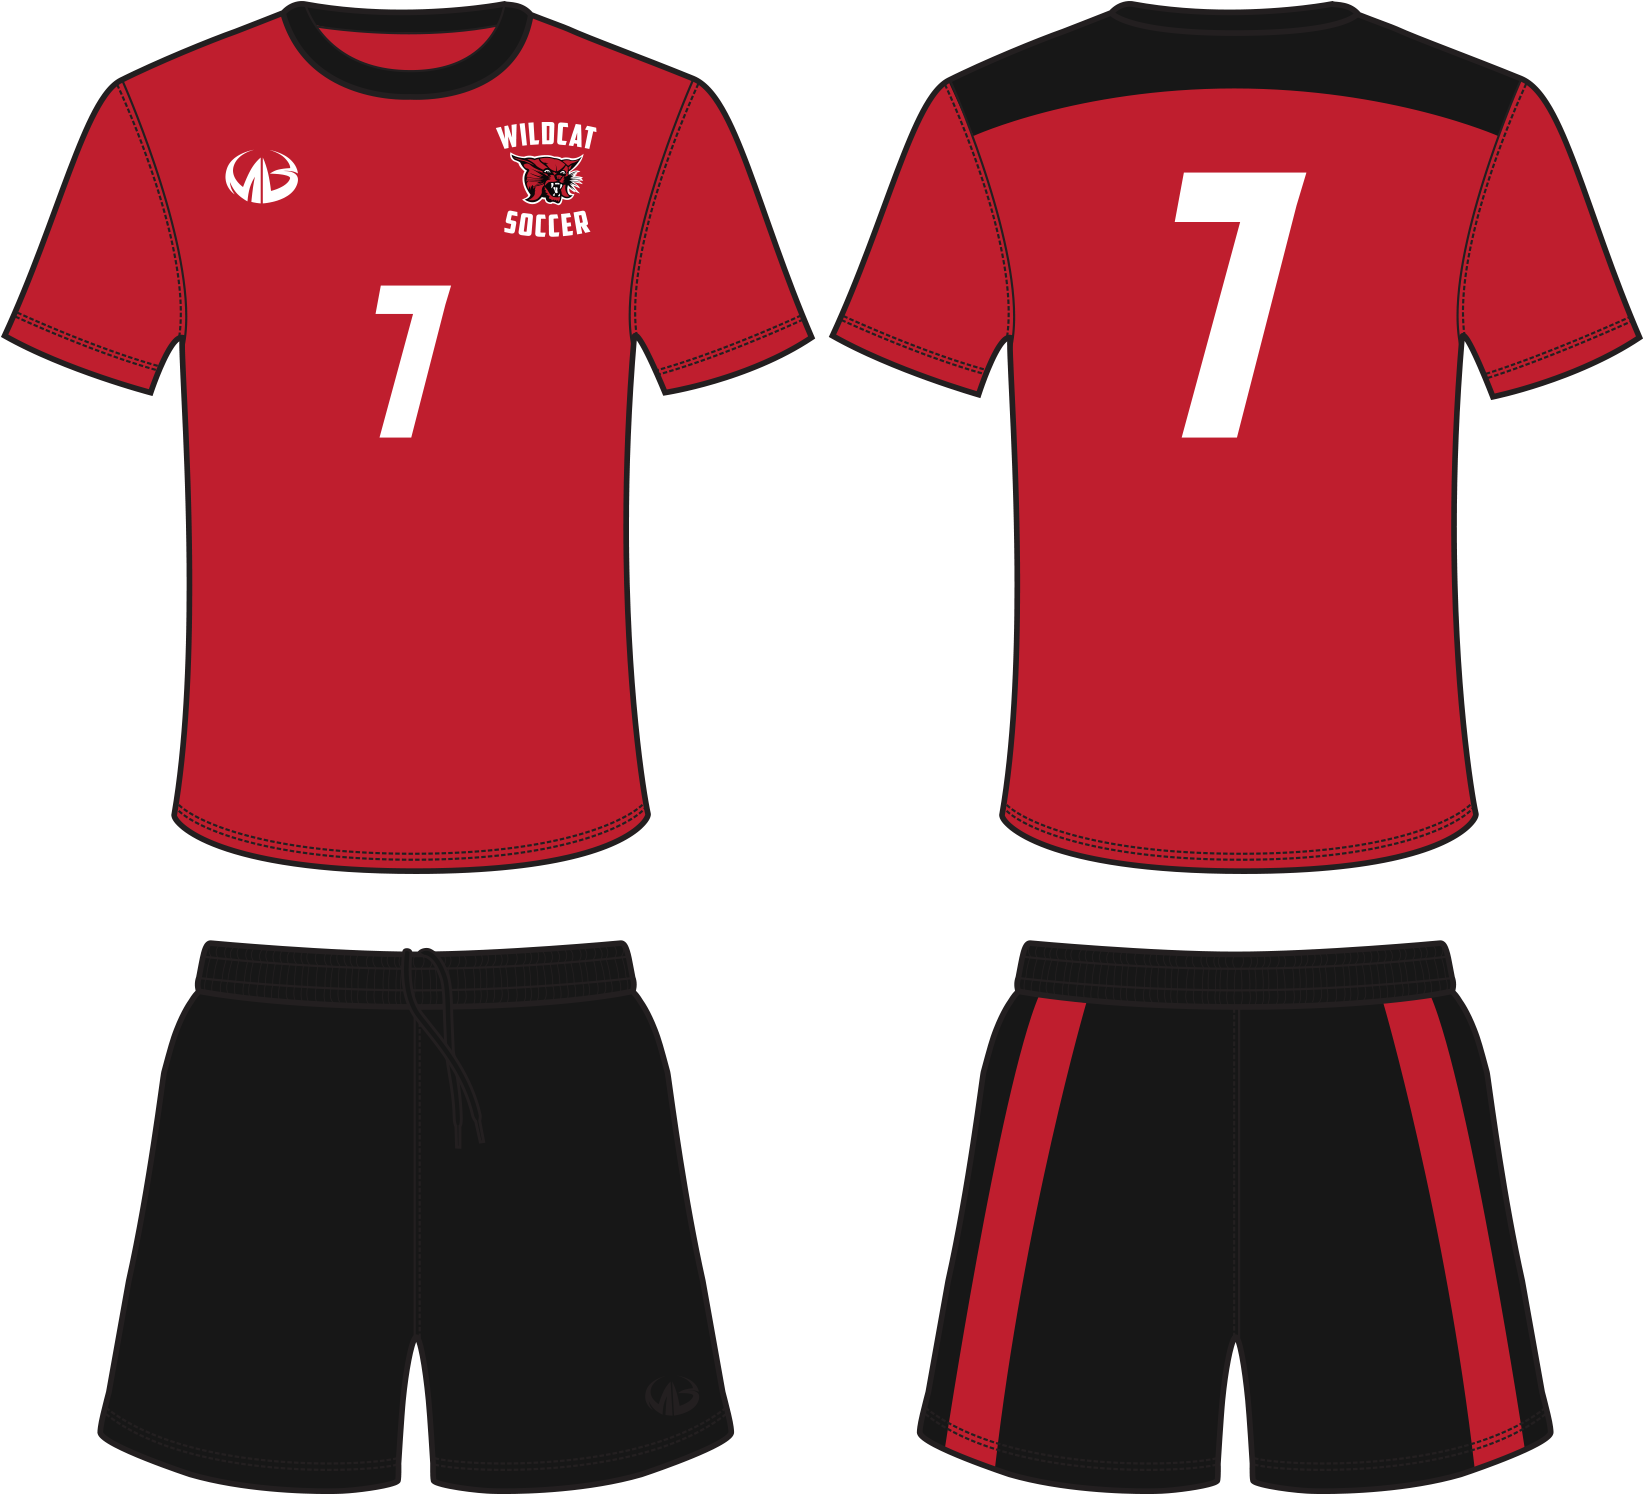 T-shirt Jersey Kit Uniform Clothing - Soccer Jersey Design Template (1700x1500)